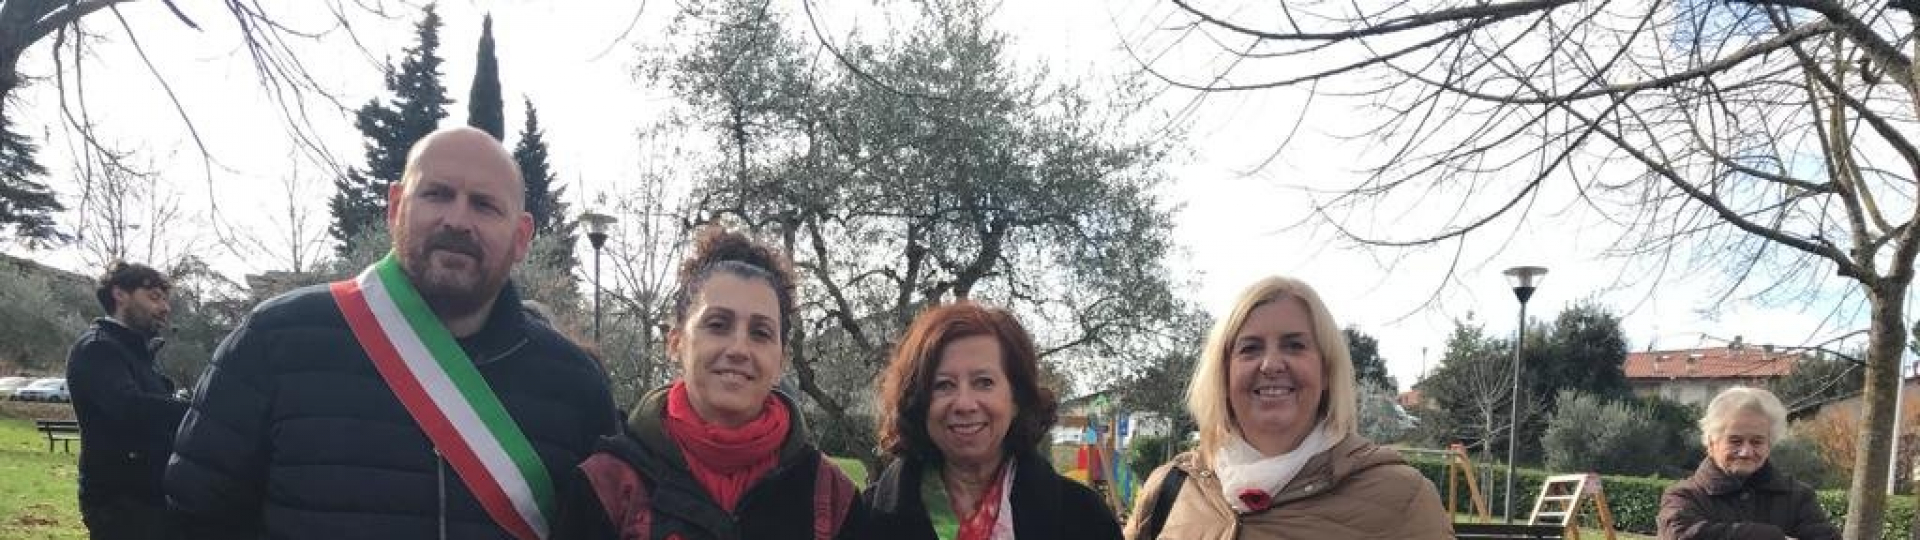 Foto Marina Baretta, Ass.re Laura Cioni, la sindacalista Laura Scalia e il Sindaco David Baroncelli